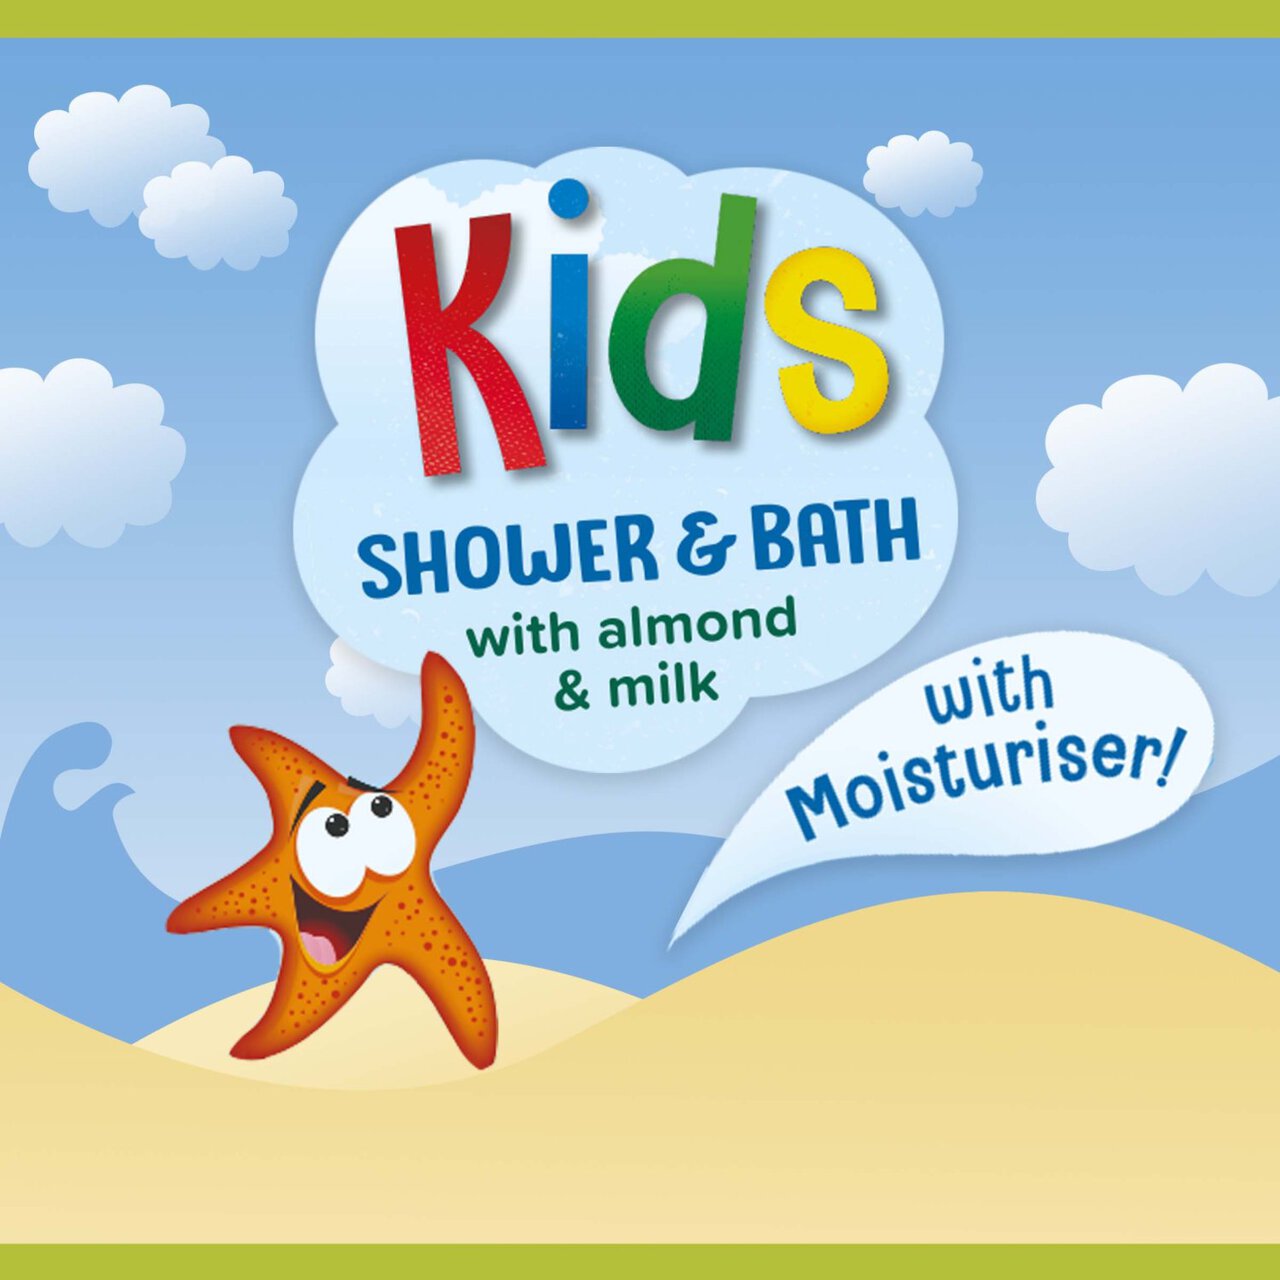 Palmolive Naturals Kids Shower & Bubble Bath Pump 750ml